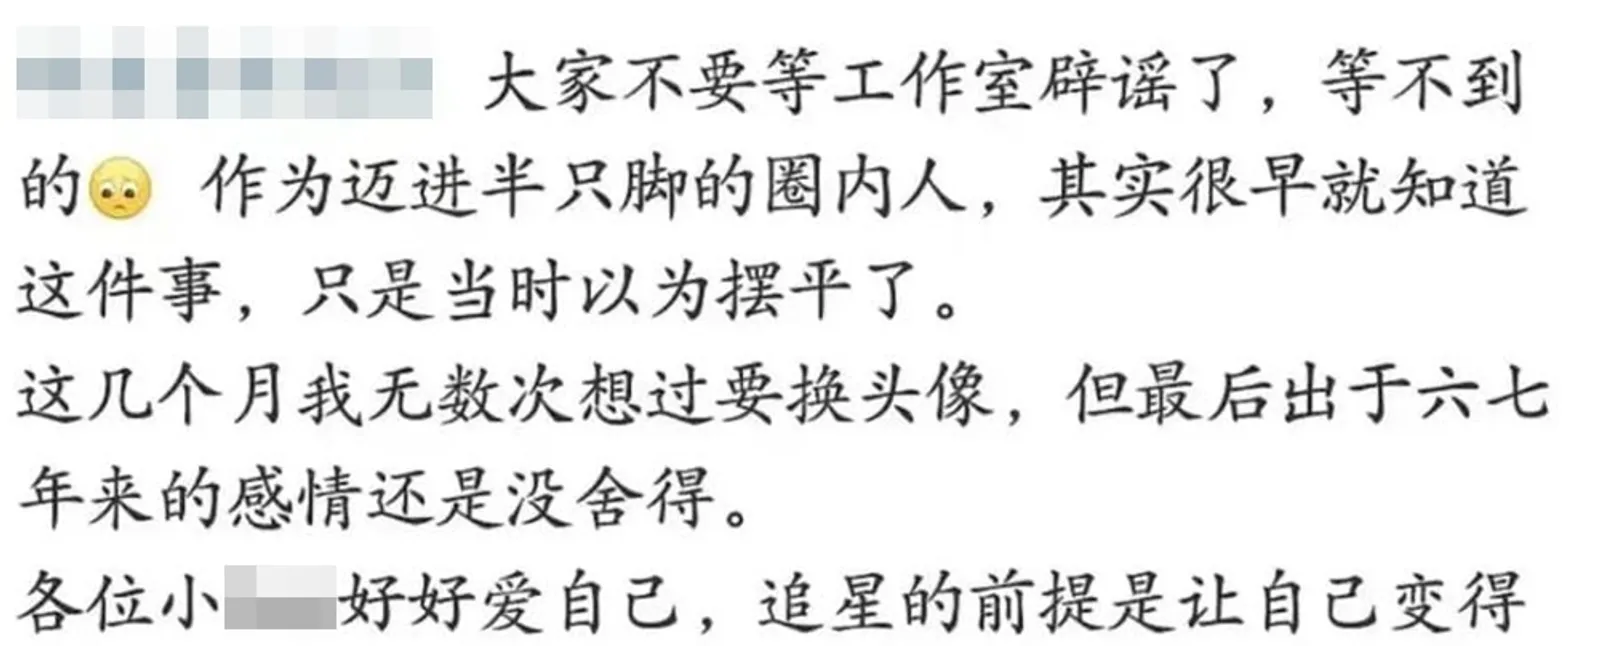 Li Yifeng Terlibat Kasus Prostitusi, Ini 6 Kronologi Penangkapannya